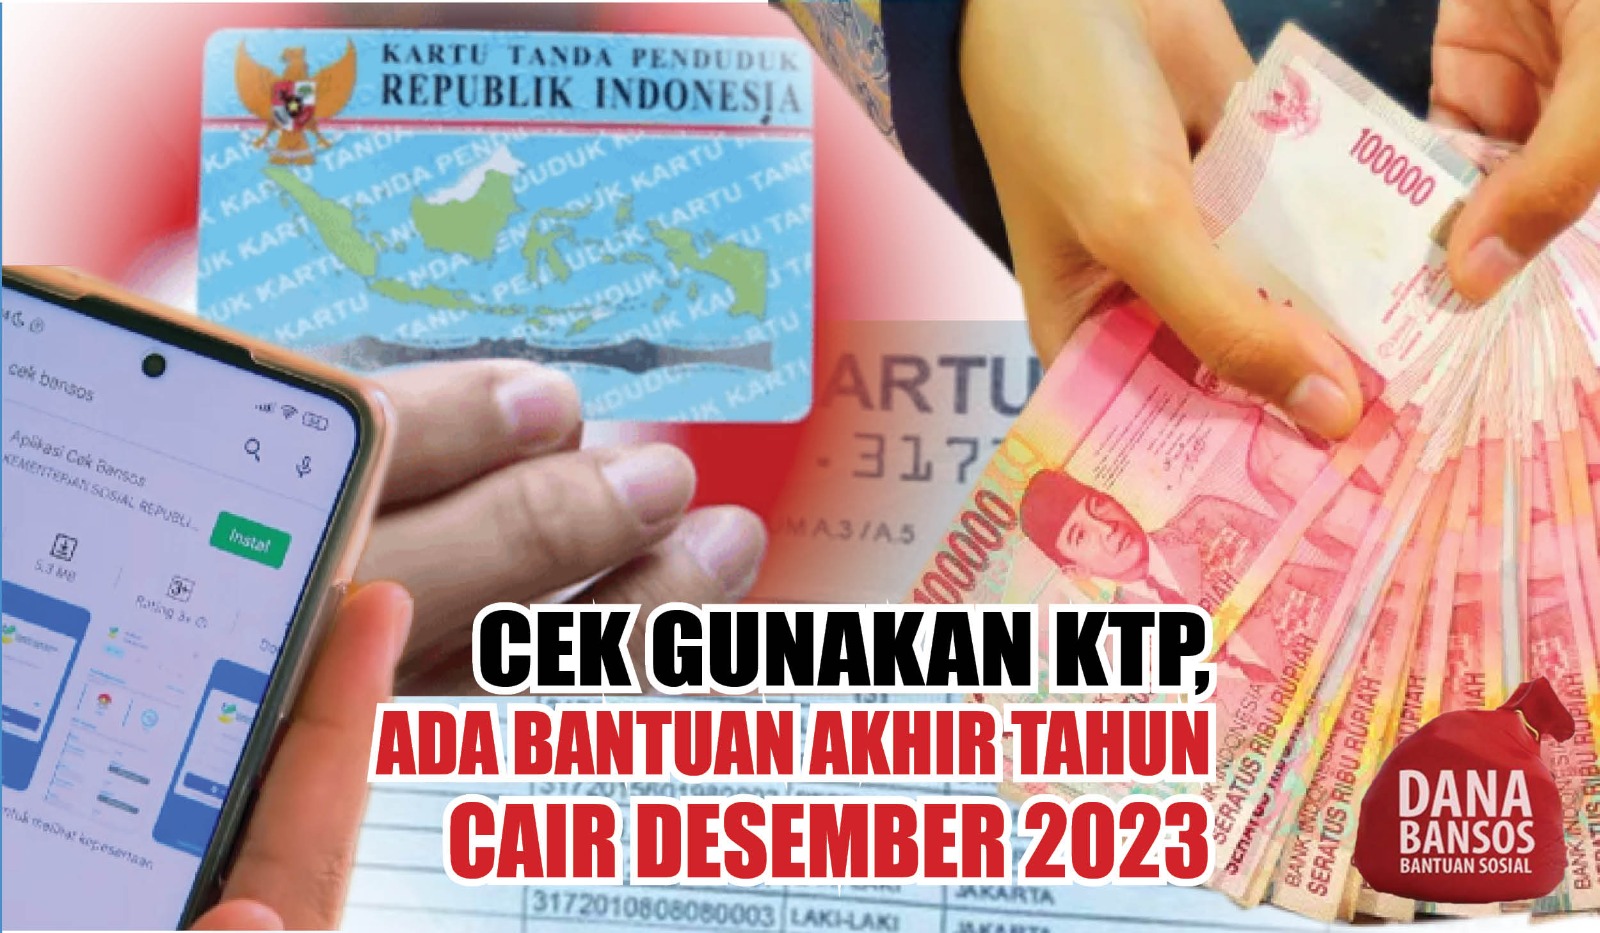 Cek Gunakan KTP, Ada Bantuan Akhir Tahun Cair Desember 2023, Masyarakat Dapat Uang Gratis Rp400.000